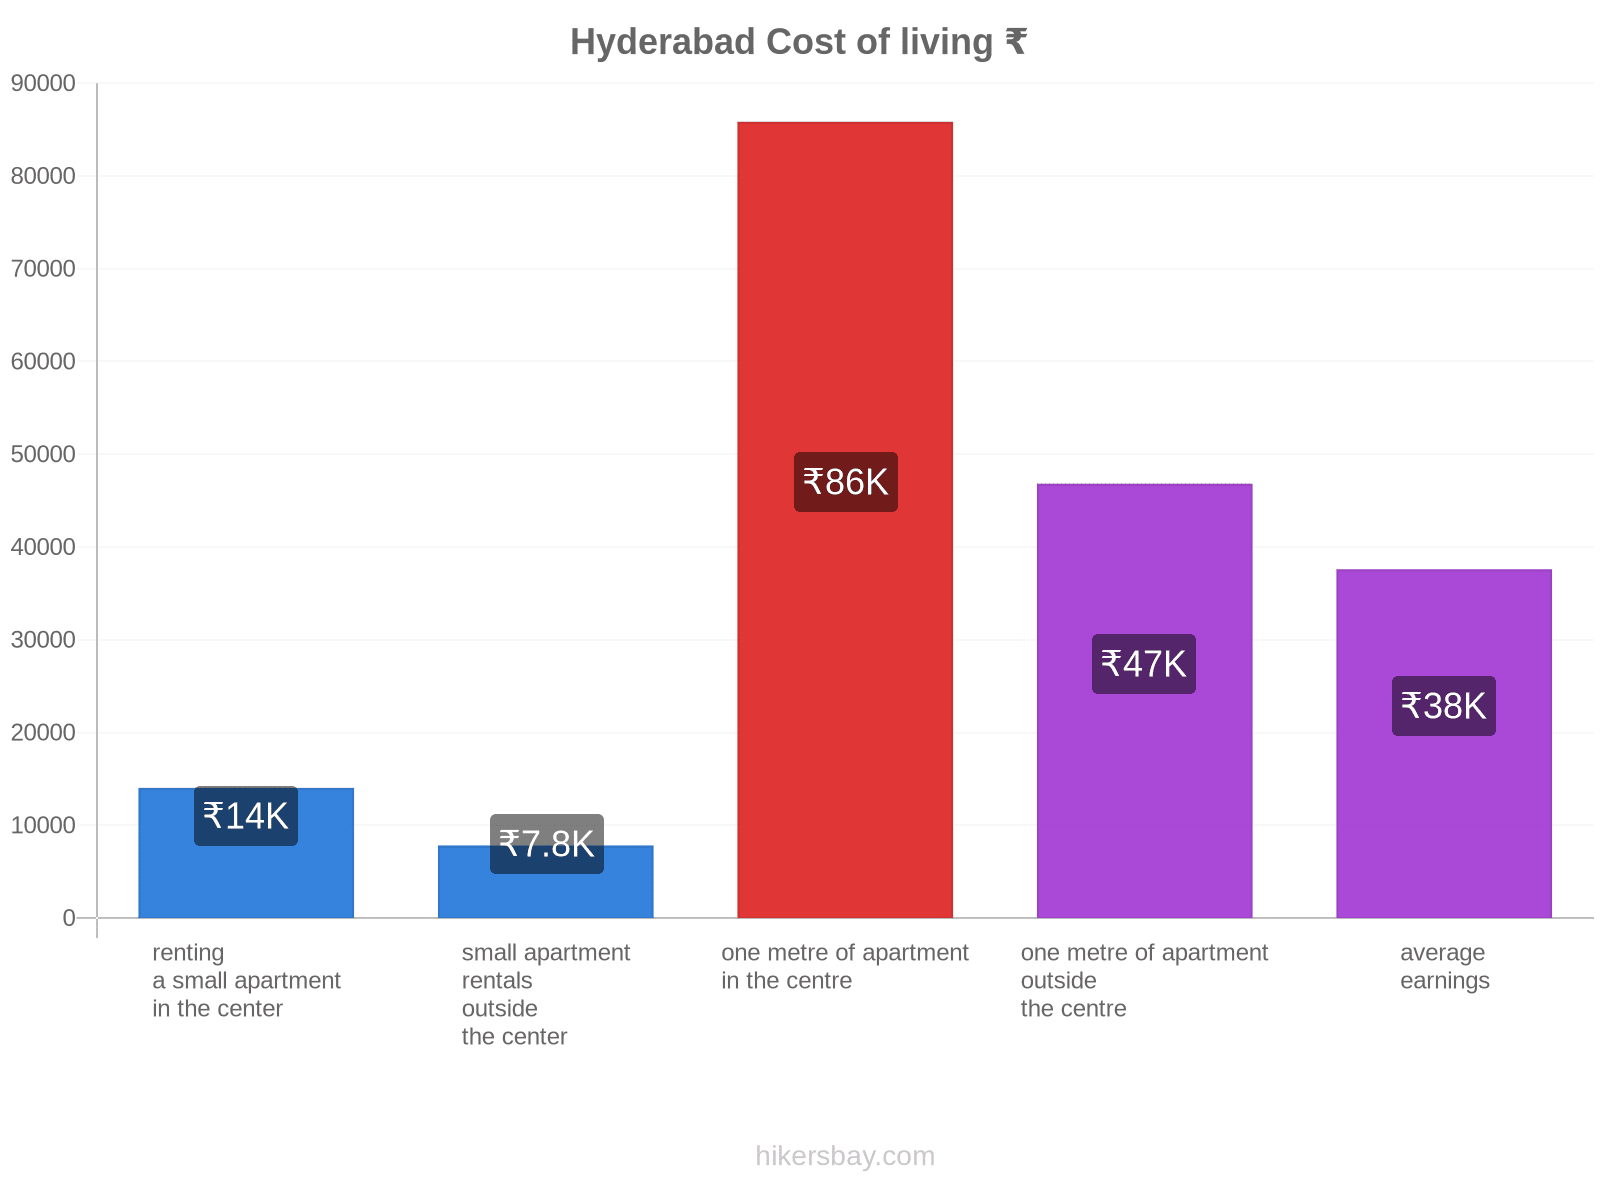 Hyderabad cost of living hikersbay.com